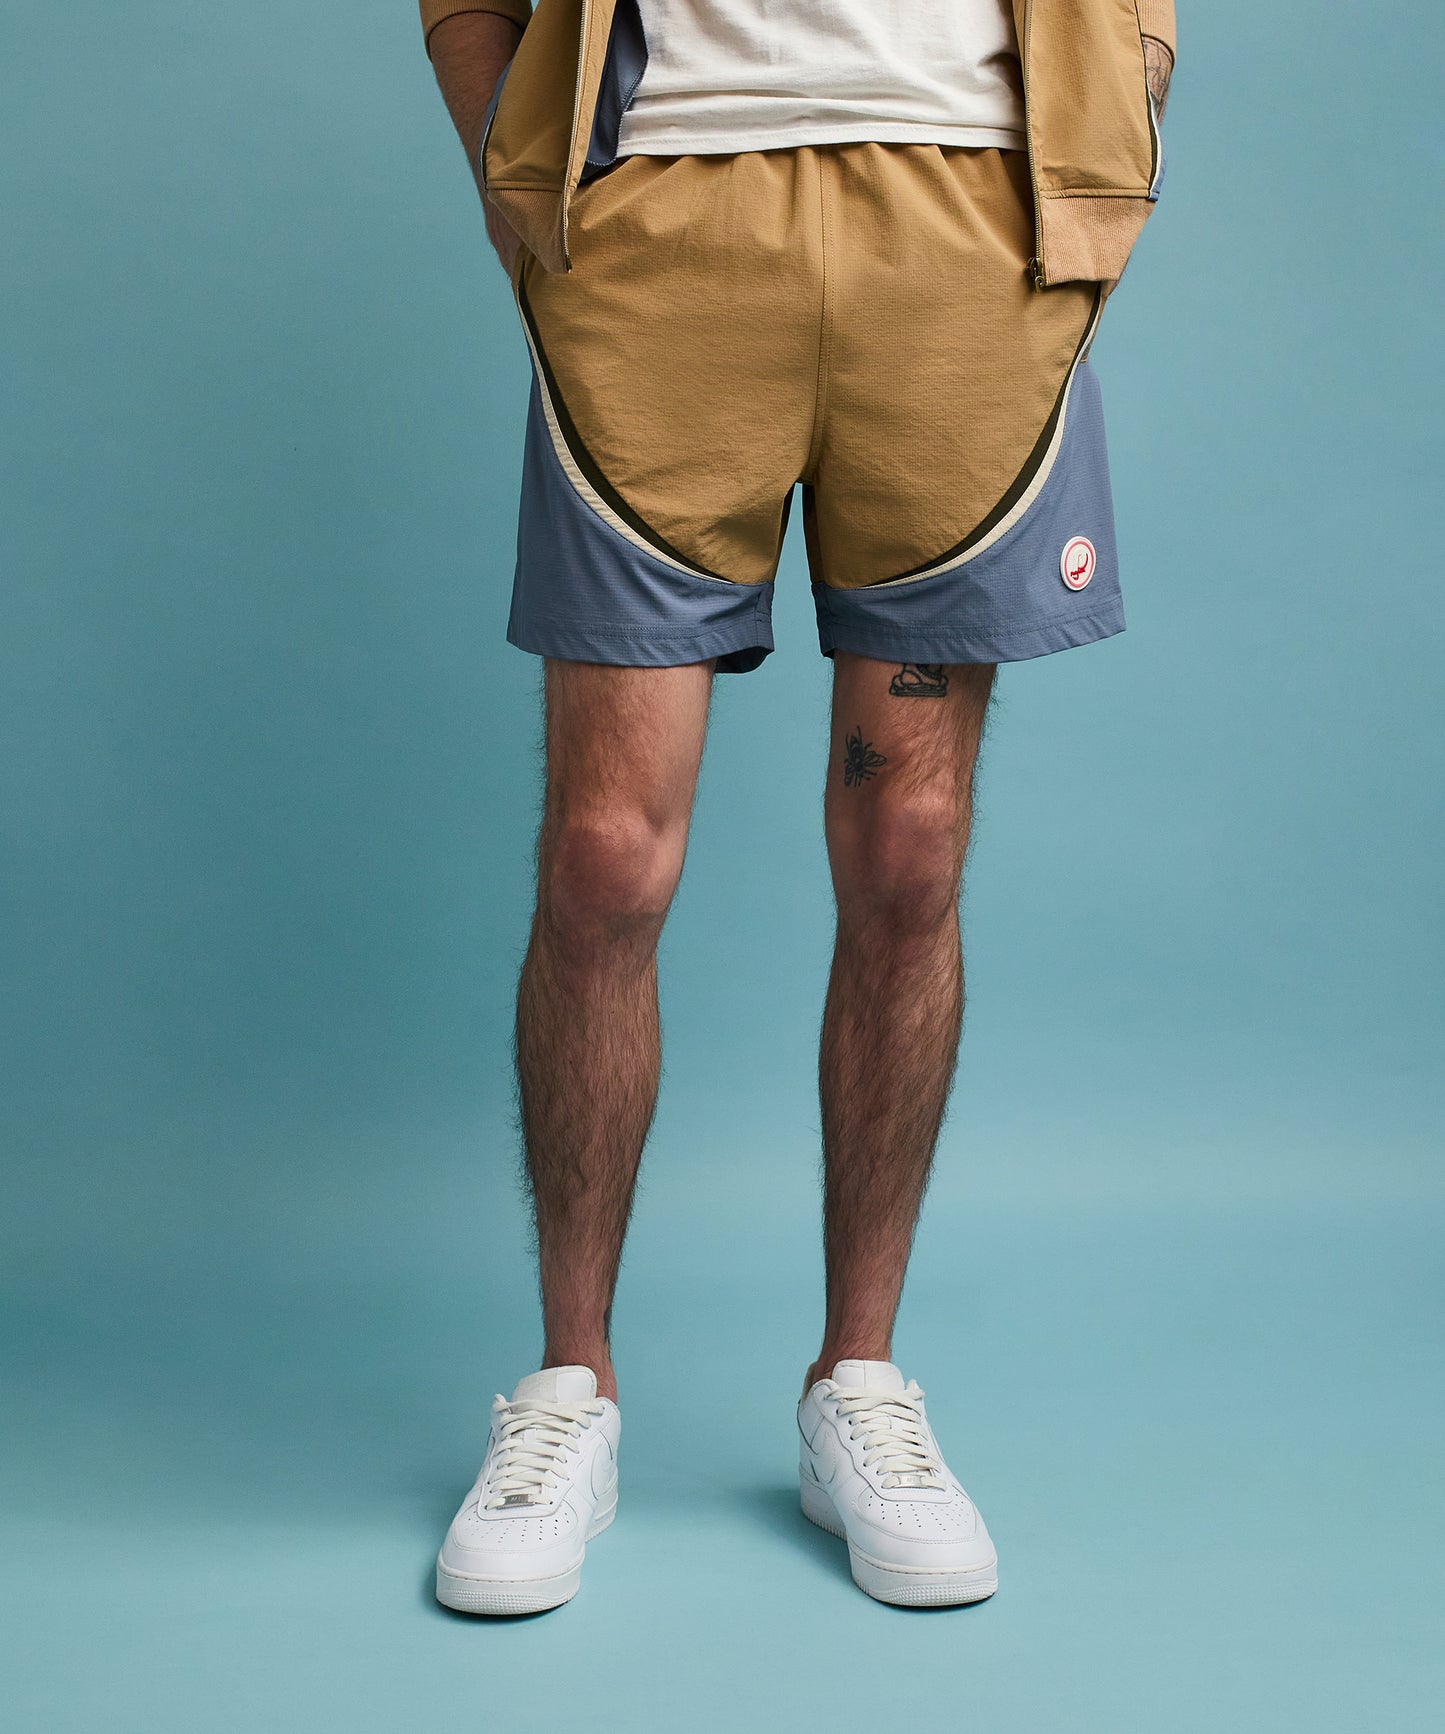 Tierbreaker Shorts - Khaki